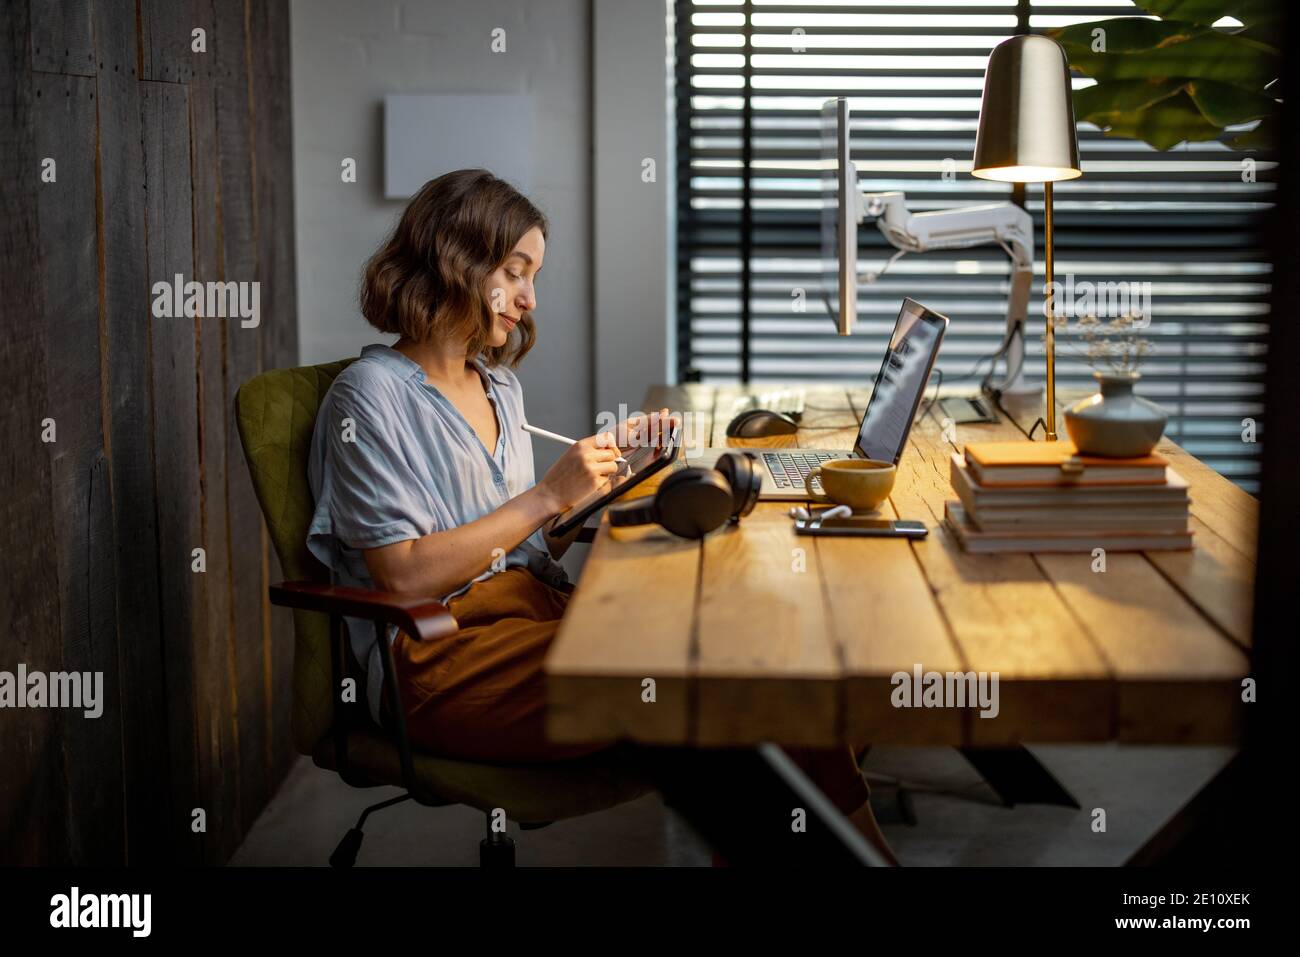 Junge Frau, die lässig gekleidet ist und kreative Arbeit hat, auf einem digitalen Tablet zeichnet und im gemütlichen und stilvollen Home Office sitzt Stockfoto